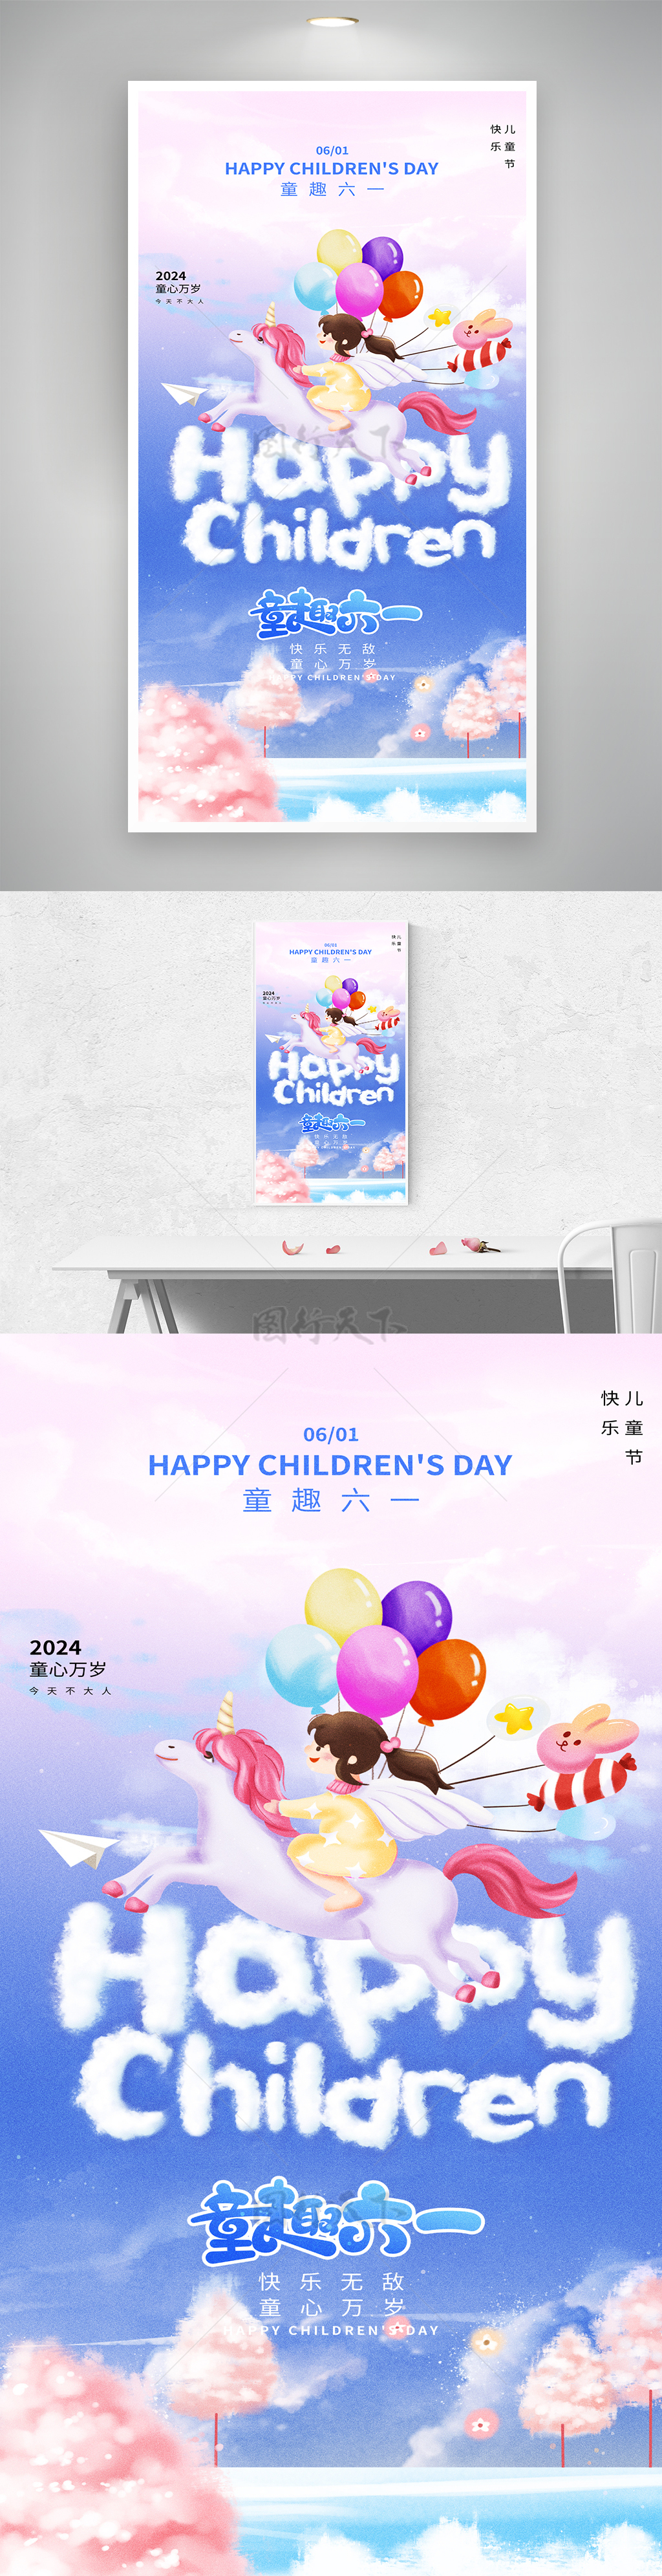 六一儿童节气球飞马创意海报